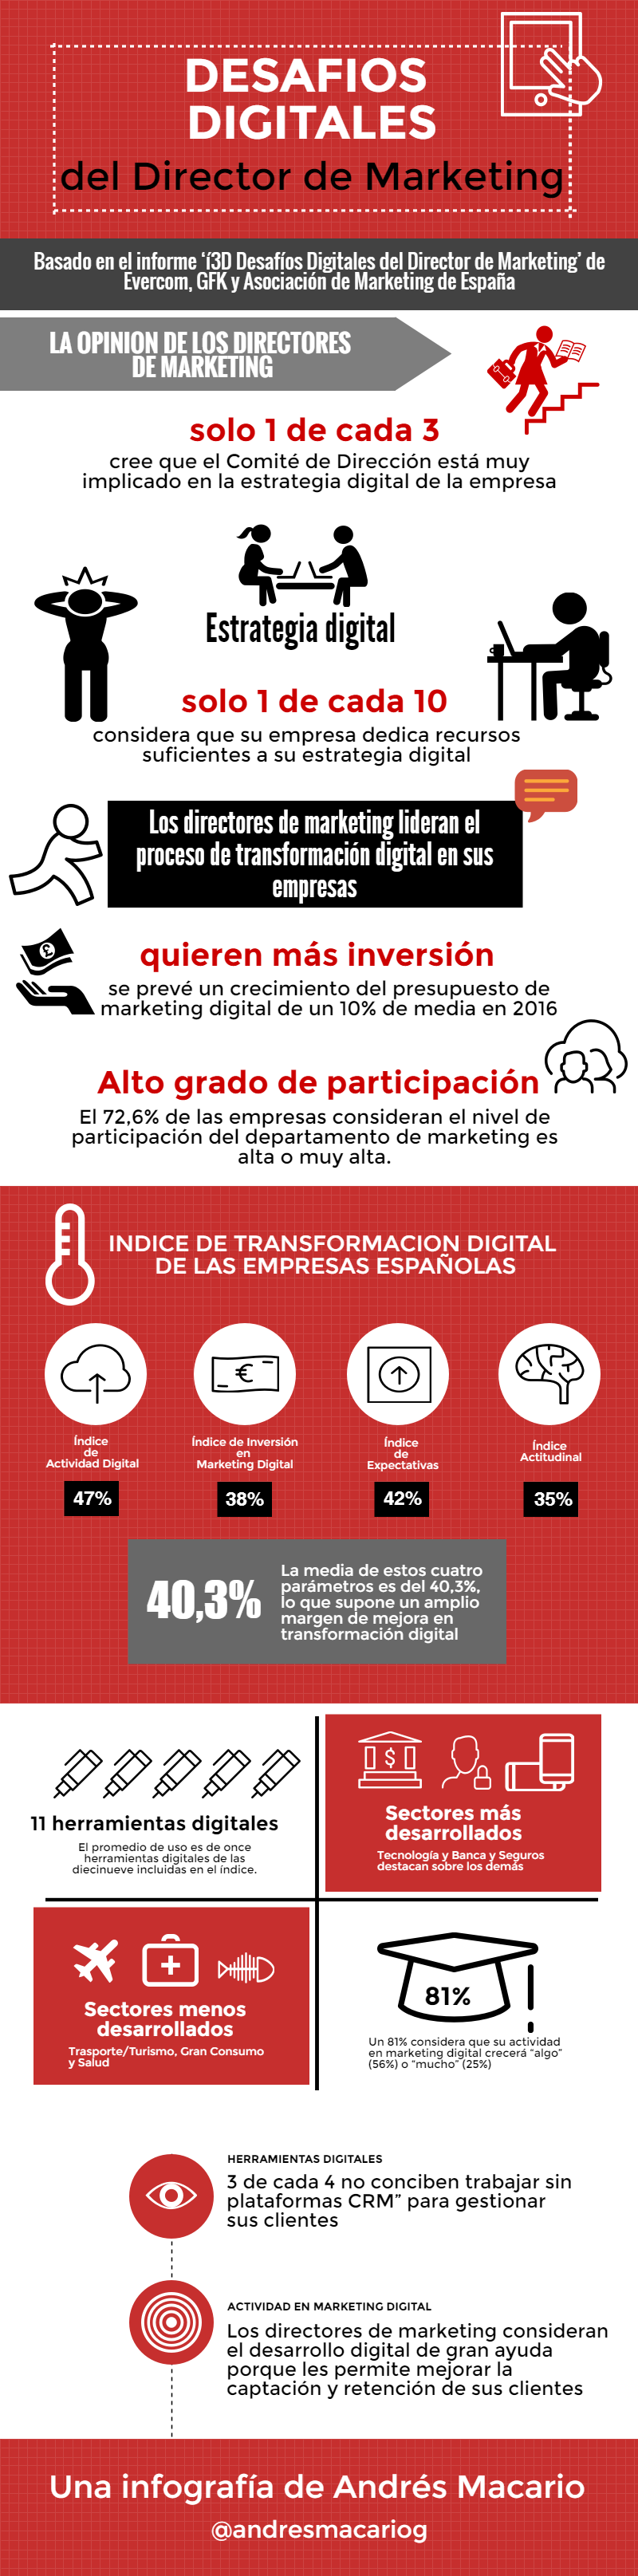 Desafios digitales del director de marketing Infografia Andres Macario